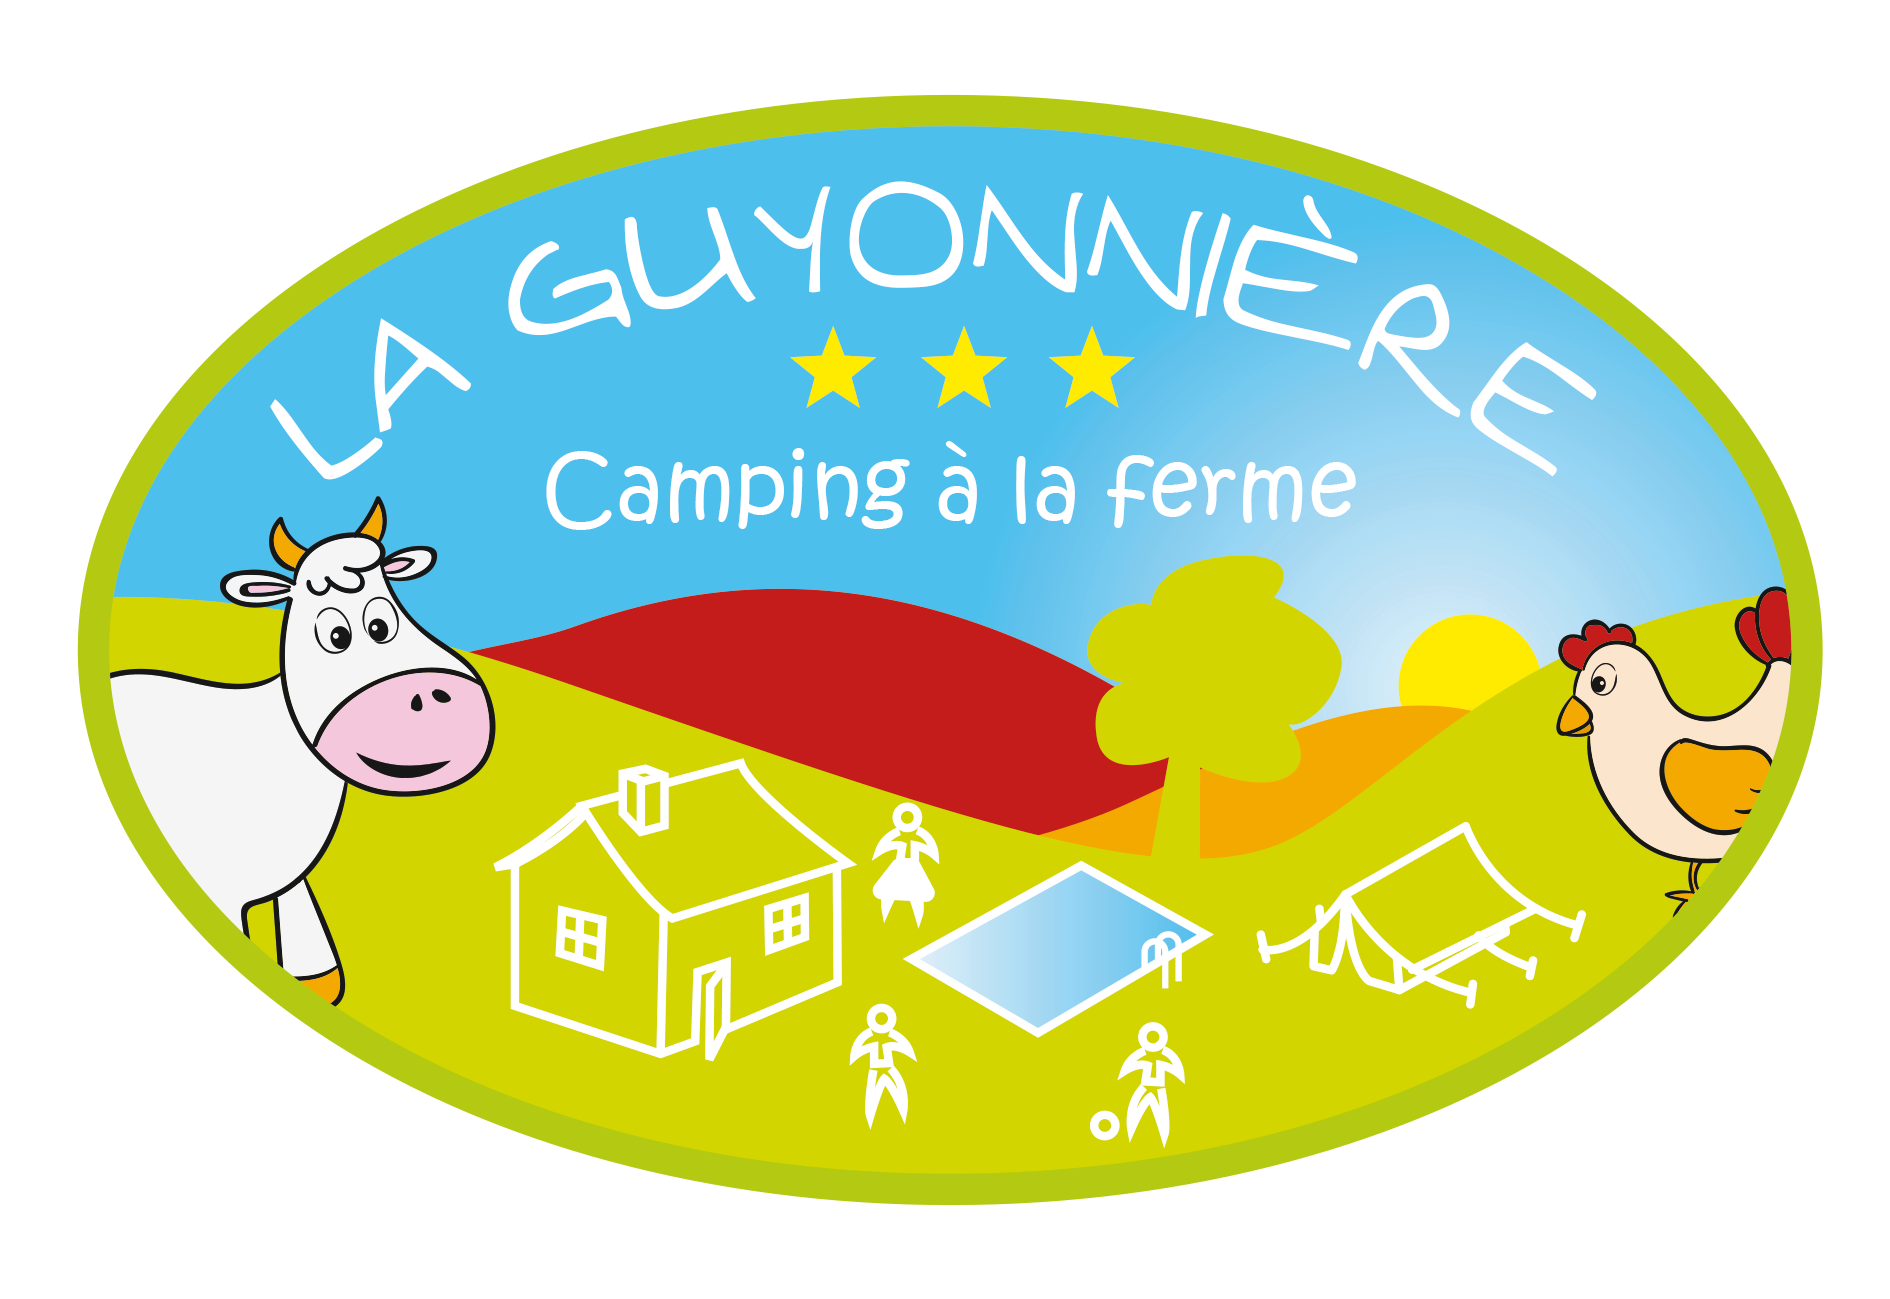 Camping à la ferme La Guyonnière - logo le vrai